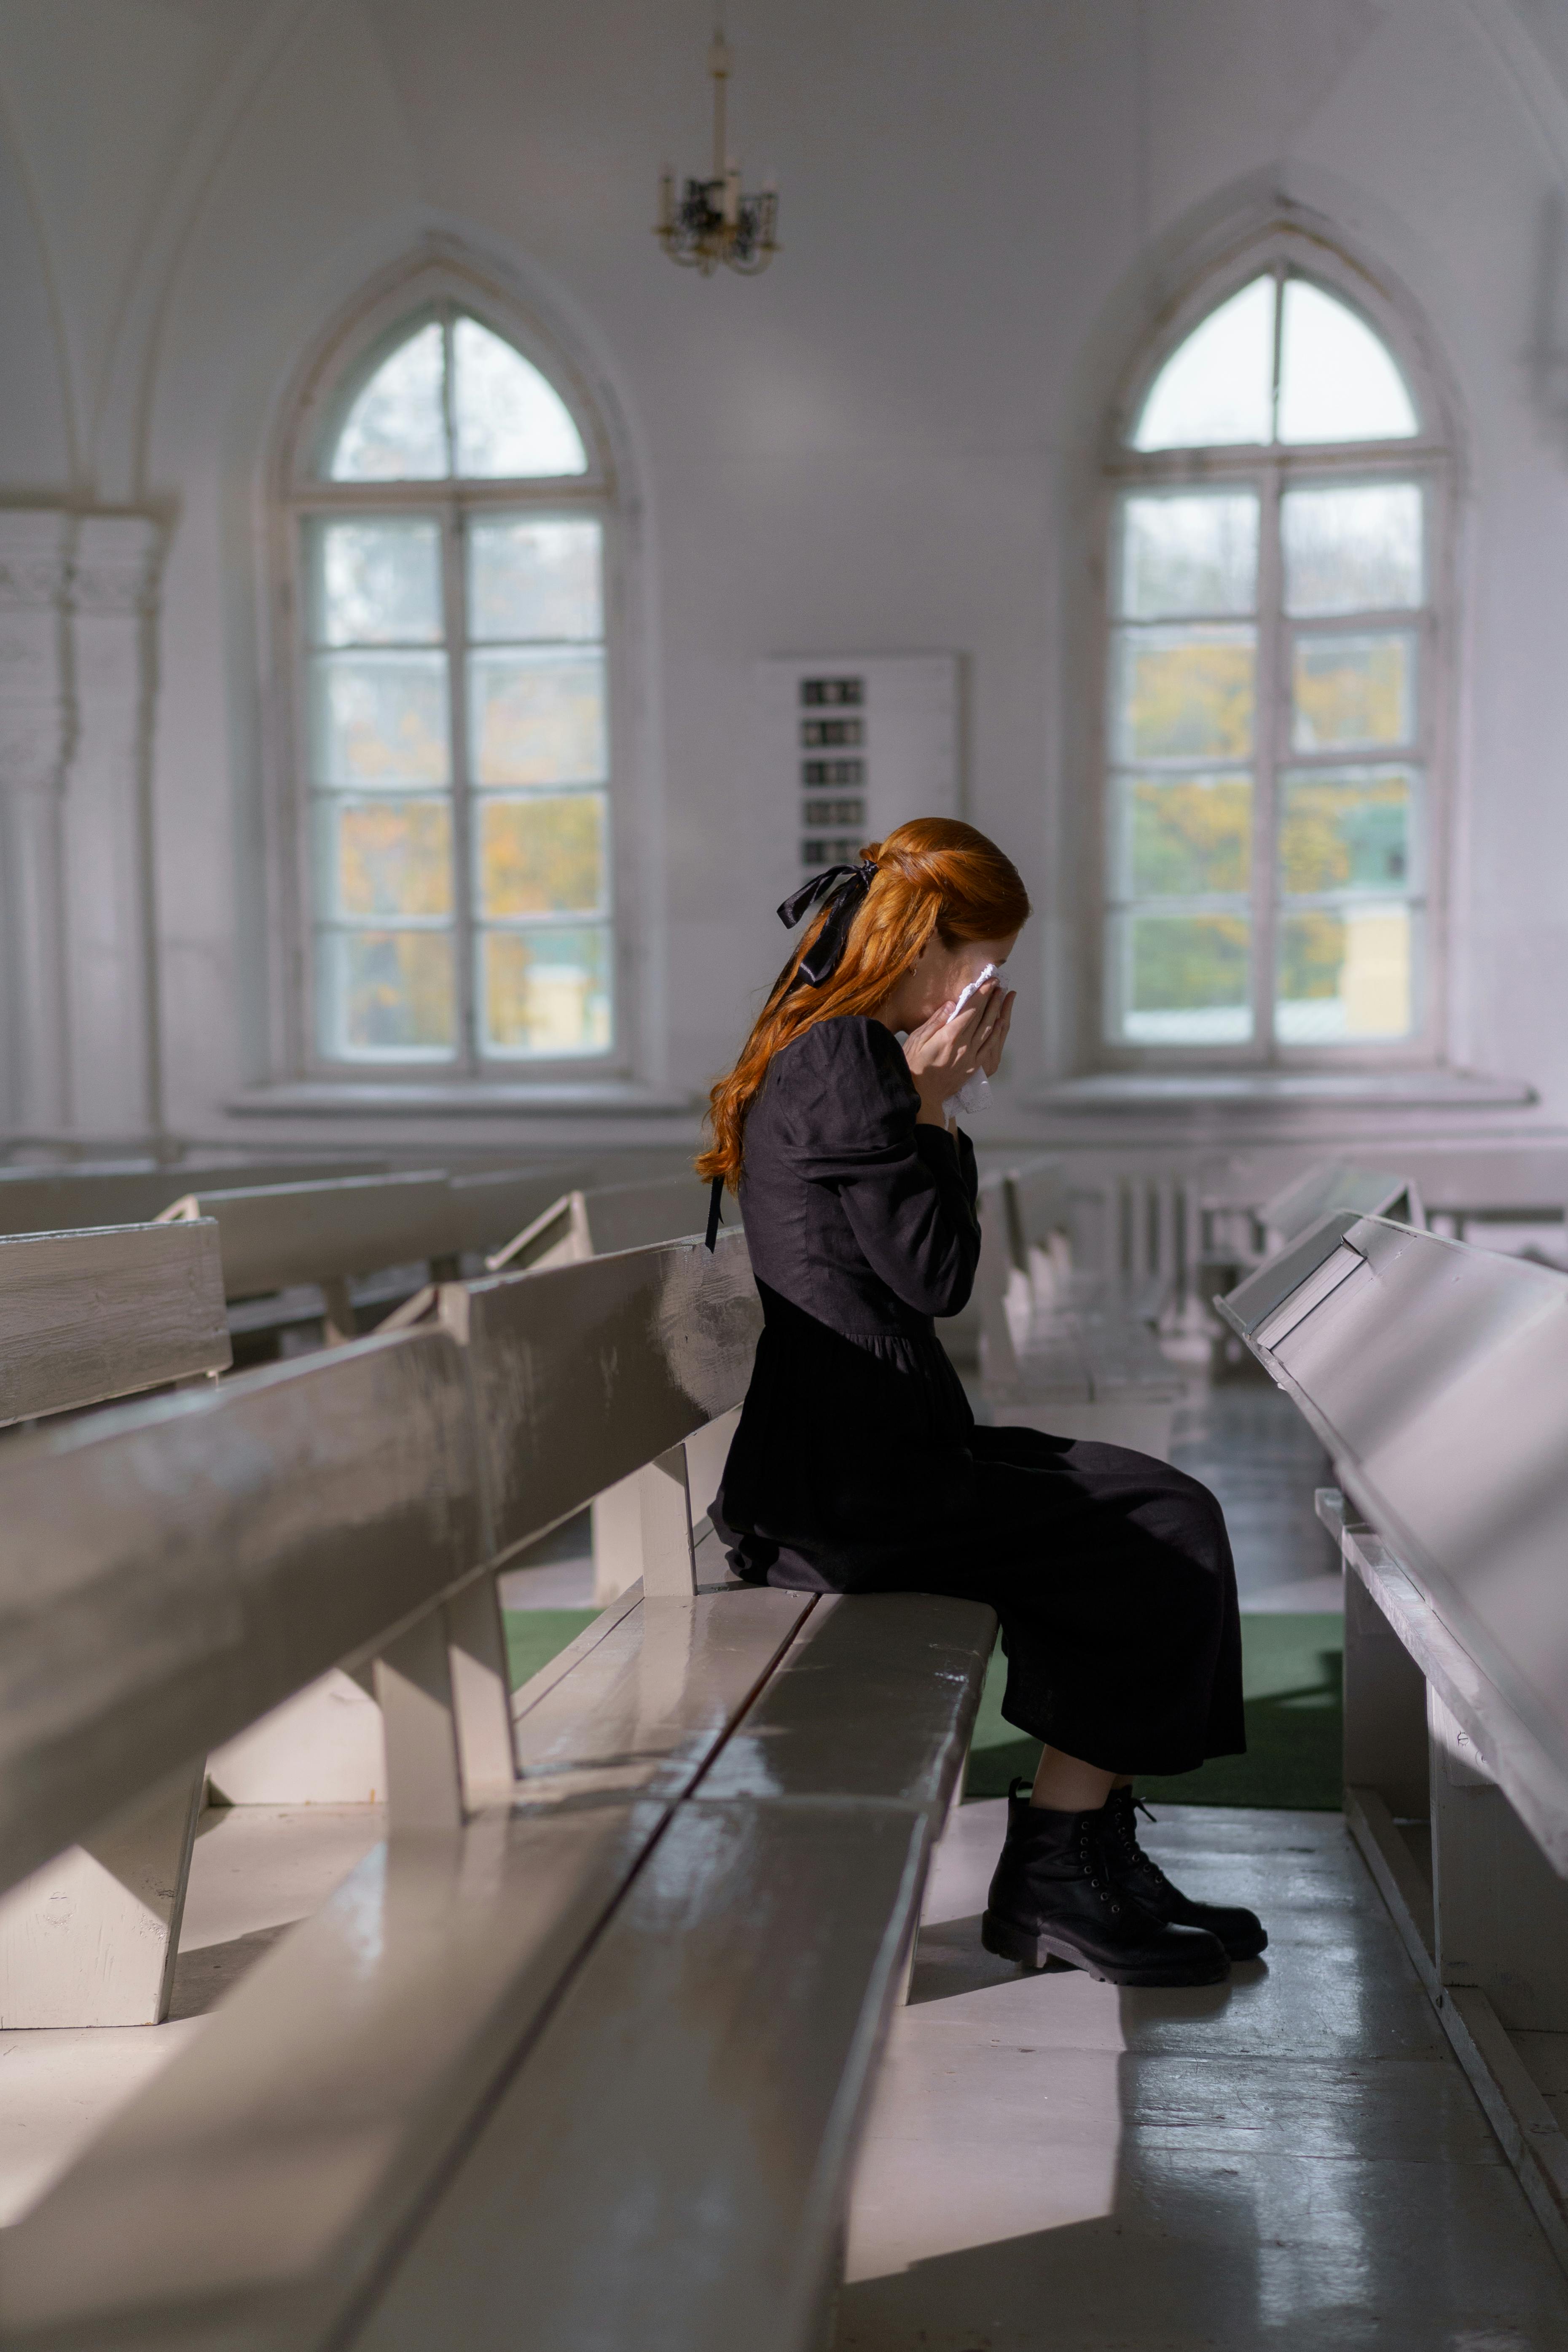 Una mujer llorando en la iglesia | Fuente: Pexels